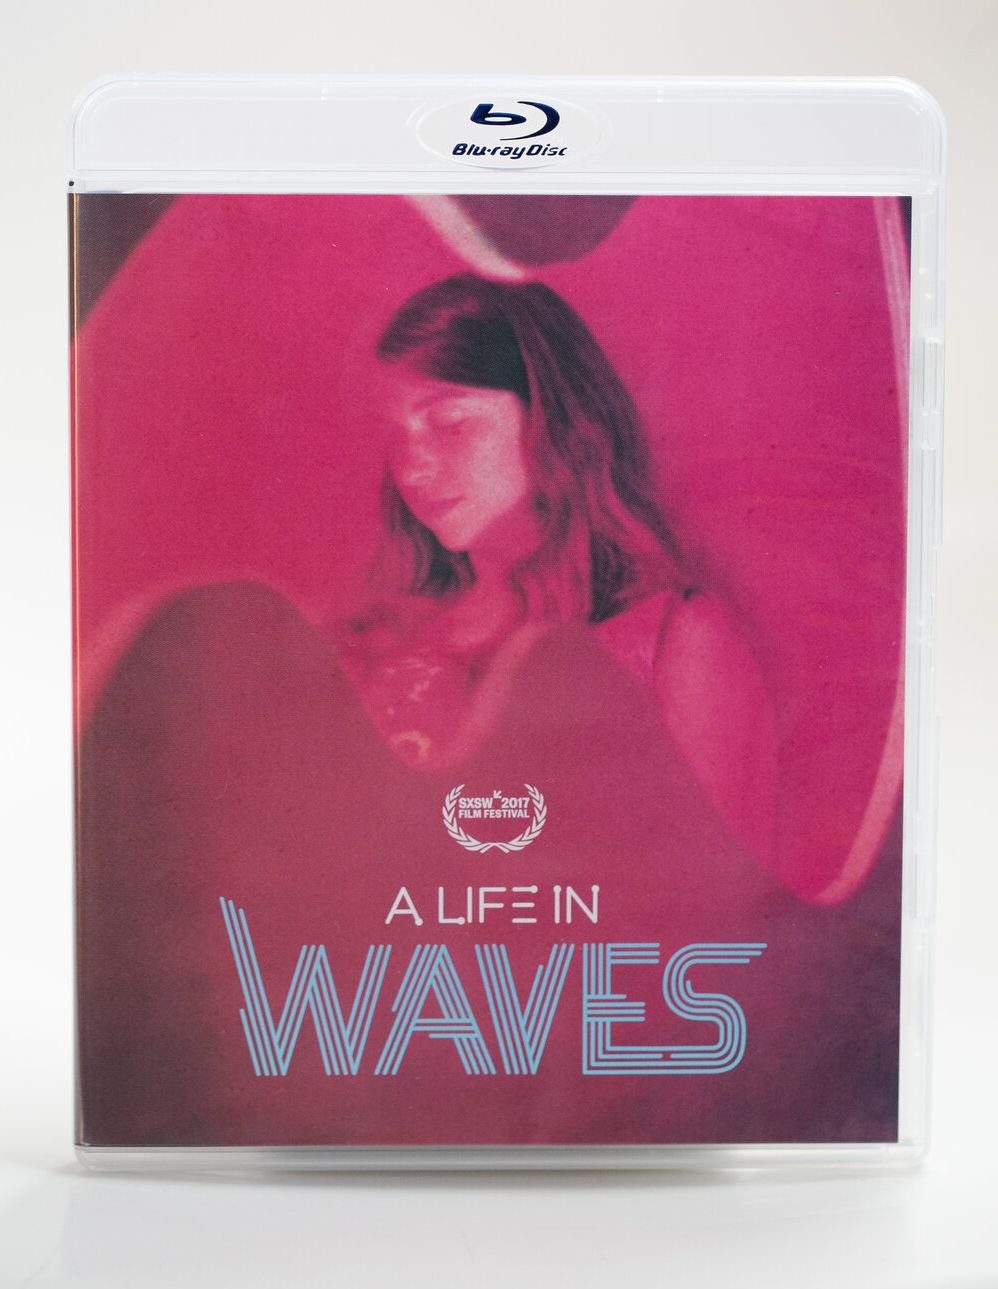 入荷♪ SUZANNE CIANI スザンヌ・チアーニのドキュメンタリー映画『A LIFE IN WAVES』が再登場